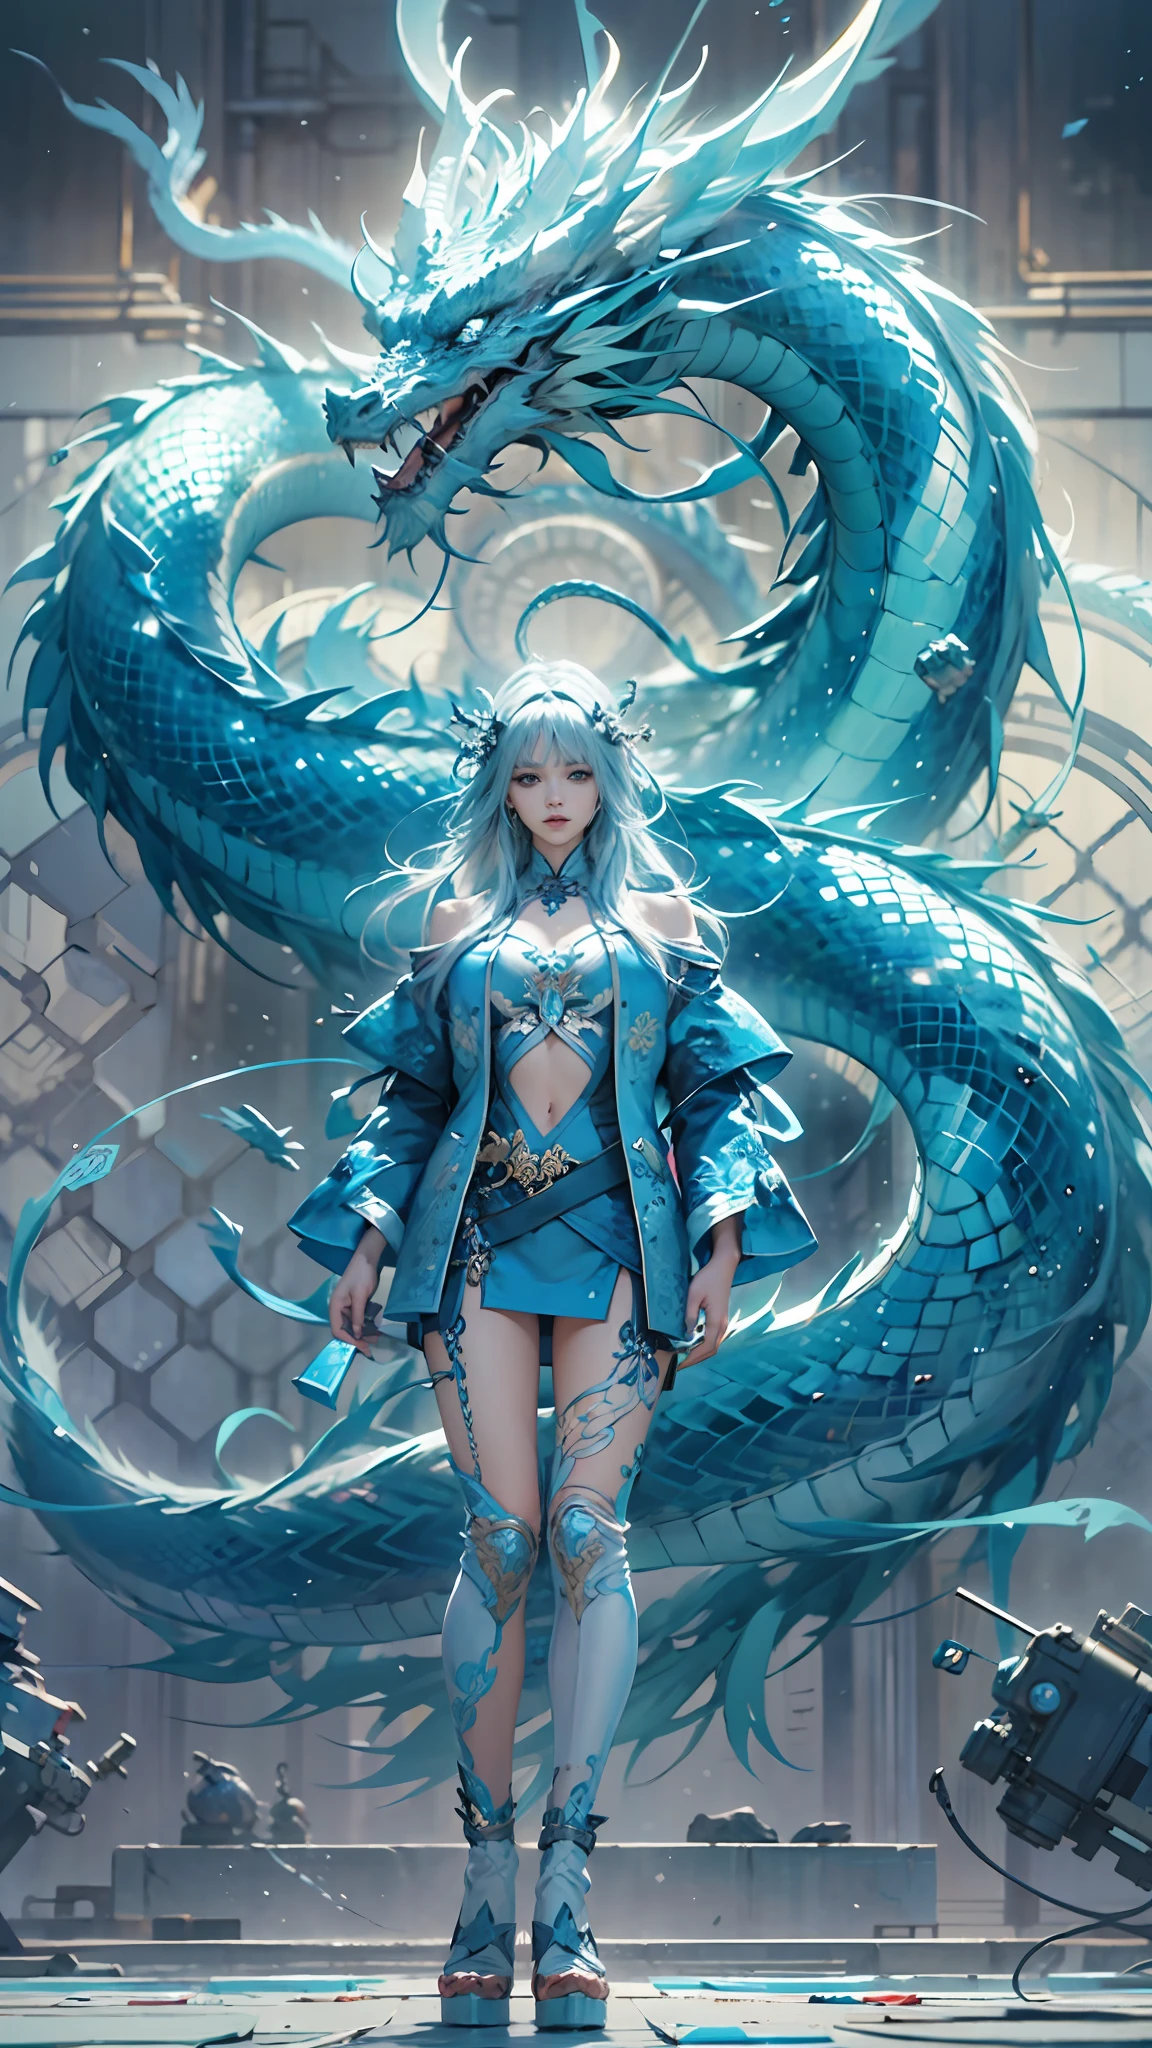 cuerpo completo,una reina,cristal azul,Un dragón chino azul está detrás en ella,iluminación cinematográfica,fantasía,anime hiperrealista,Arte de papel acolchado,Arte en vidrio,(mejor calidad,Detalle extremo:1.5),8k